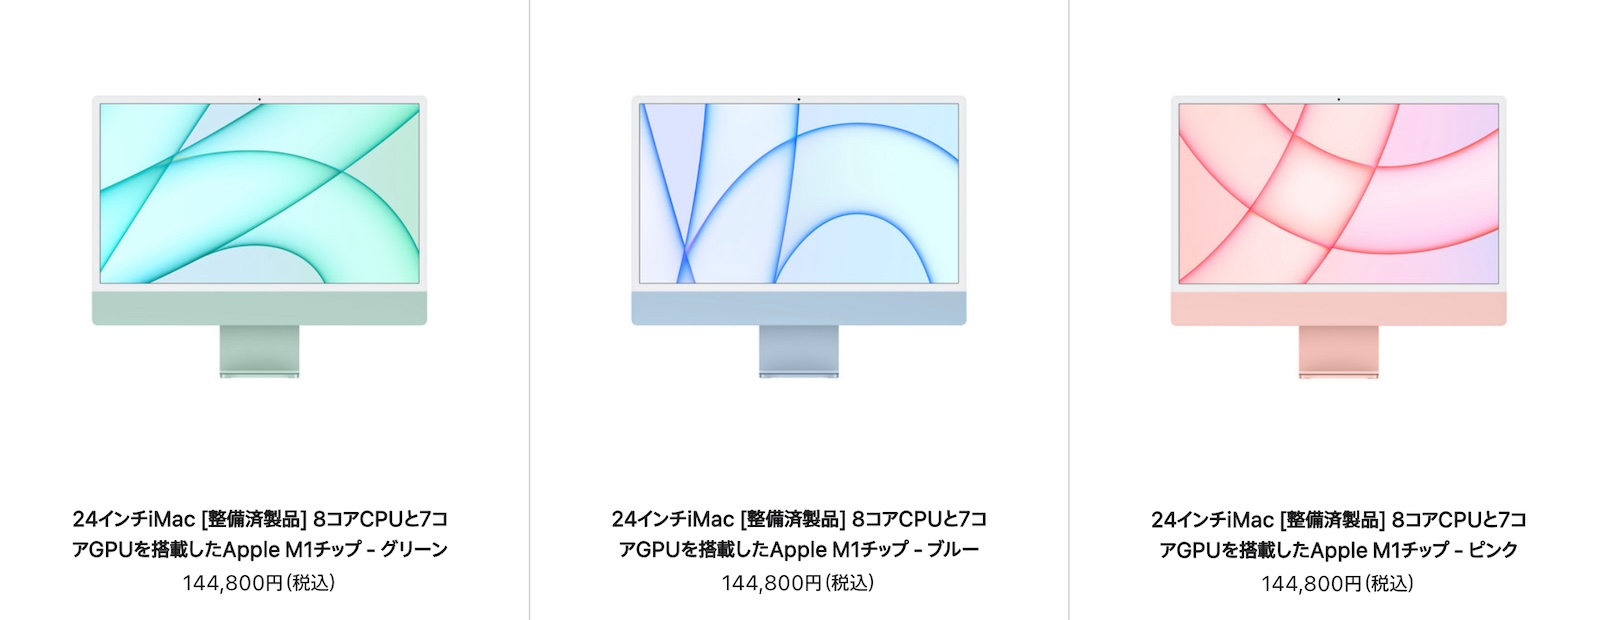 Mac-Refurbished-model-2023-10-16.jpg